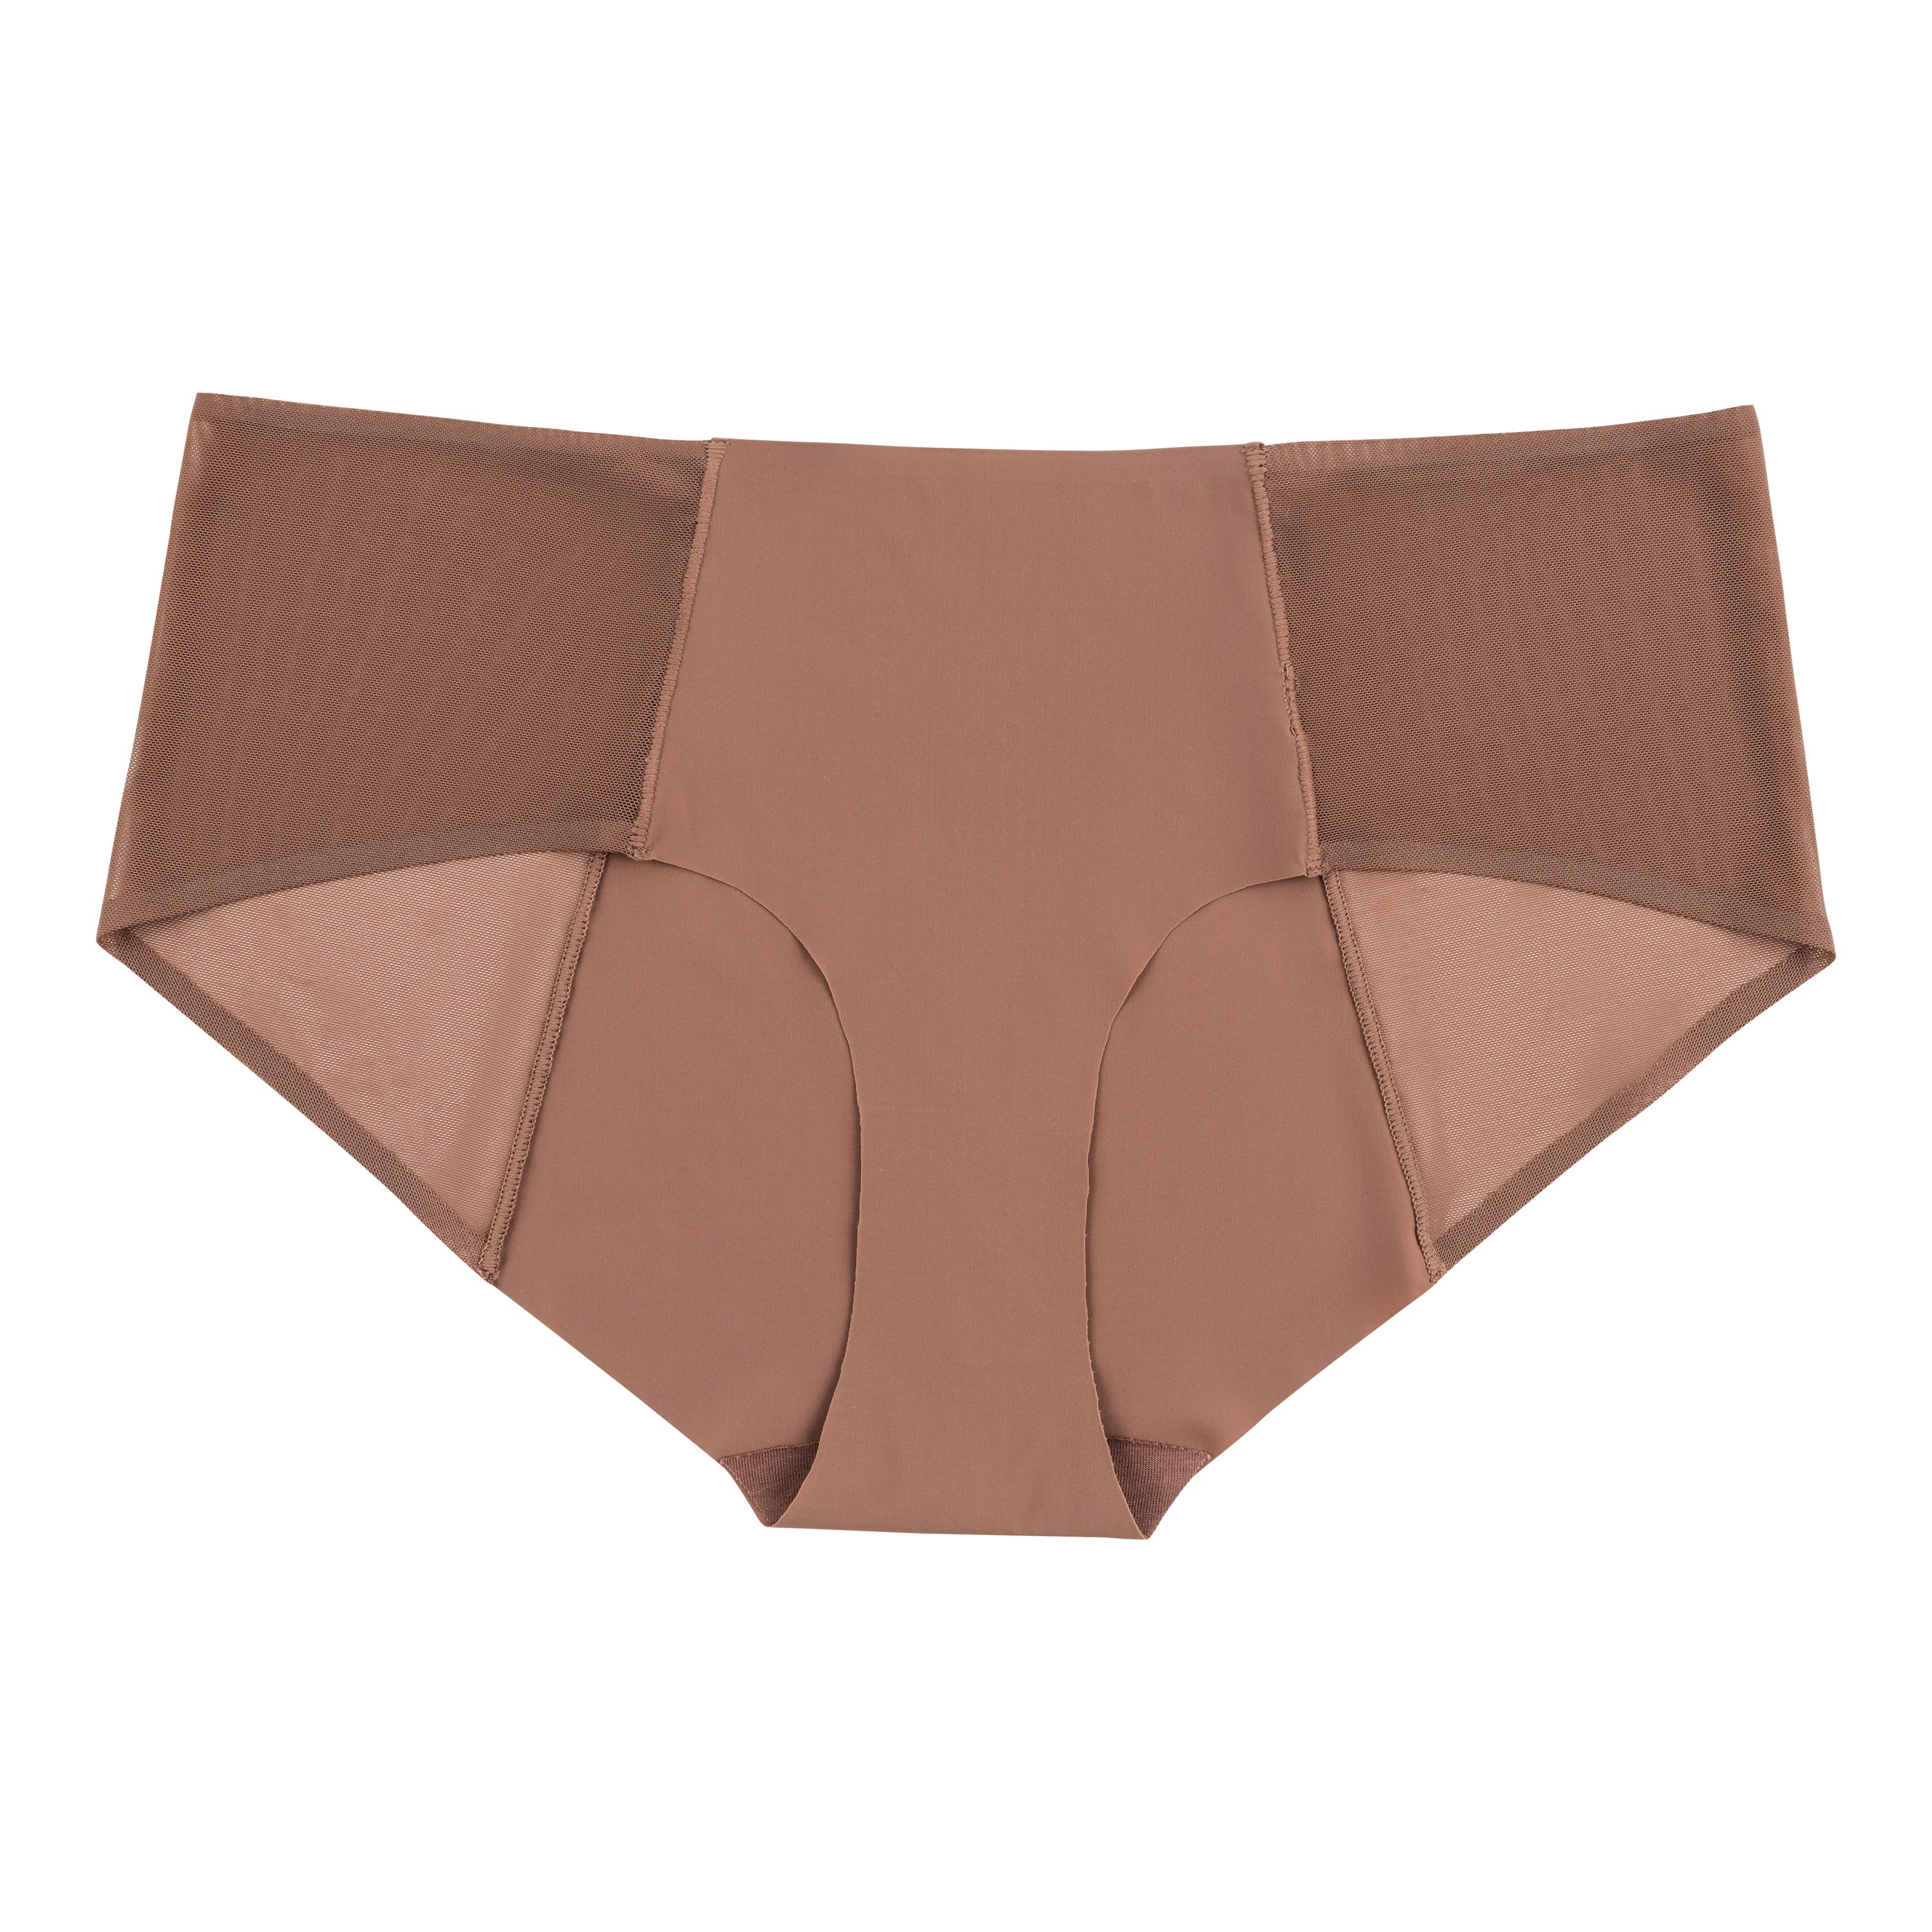 The Best Women's Underwear for Yeast Infections – Uwila Warrior